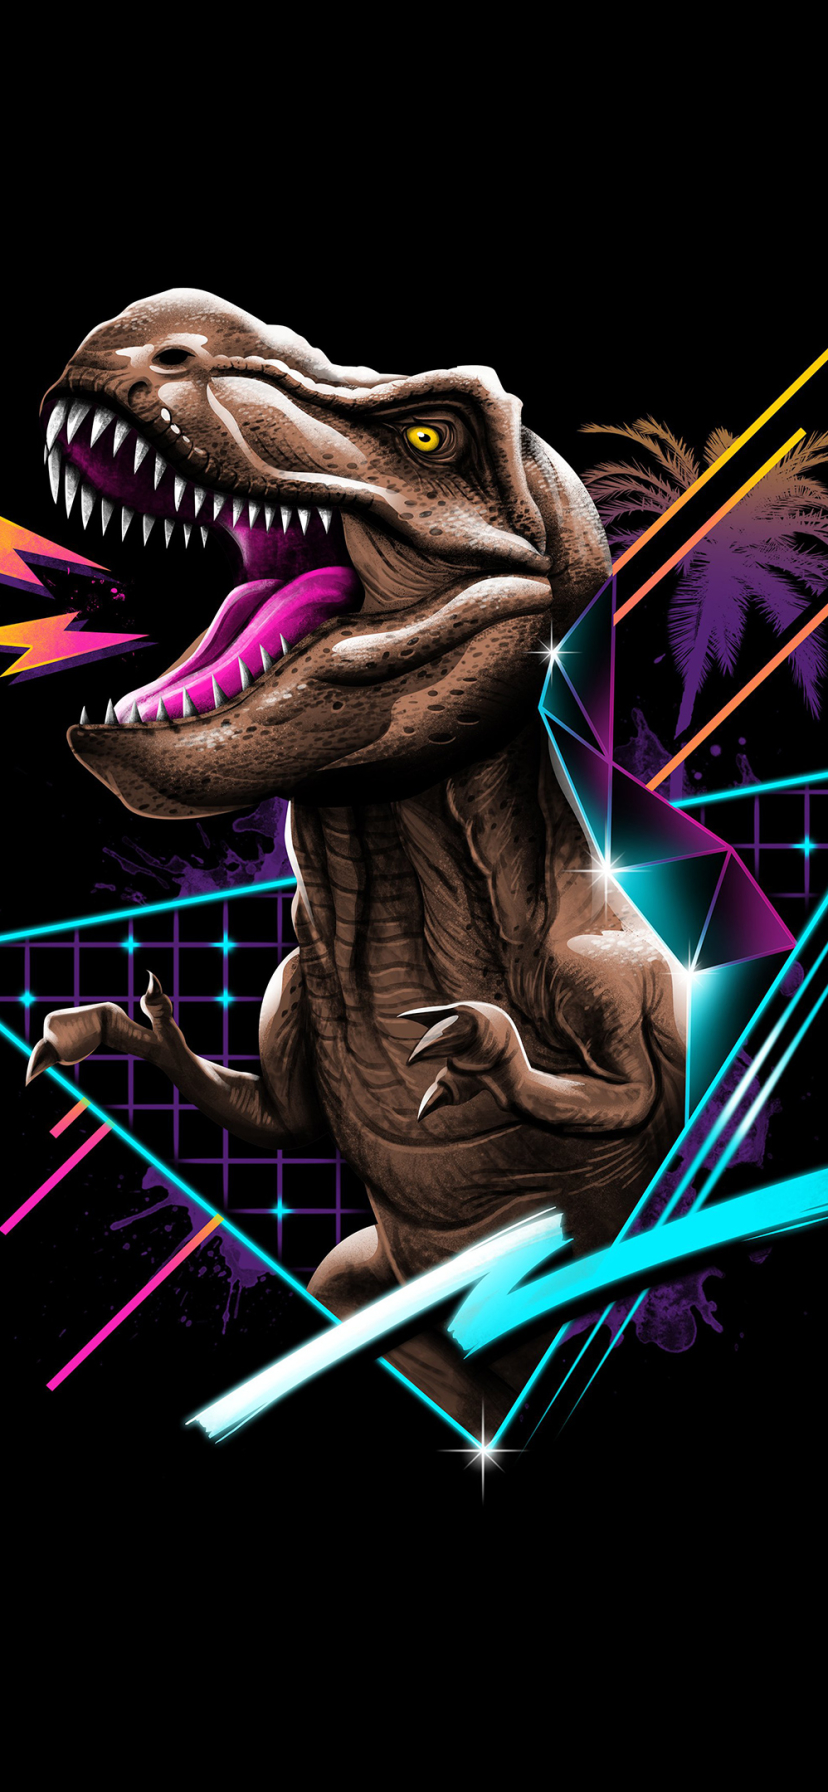 Descarga gratuita de fondo de pantalla para móvil de Retro, Artístico, Dinosaurio, Tirano Saurio Rex, Onda Retro.